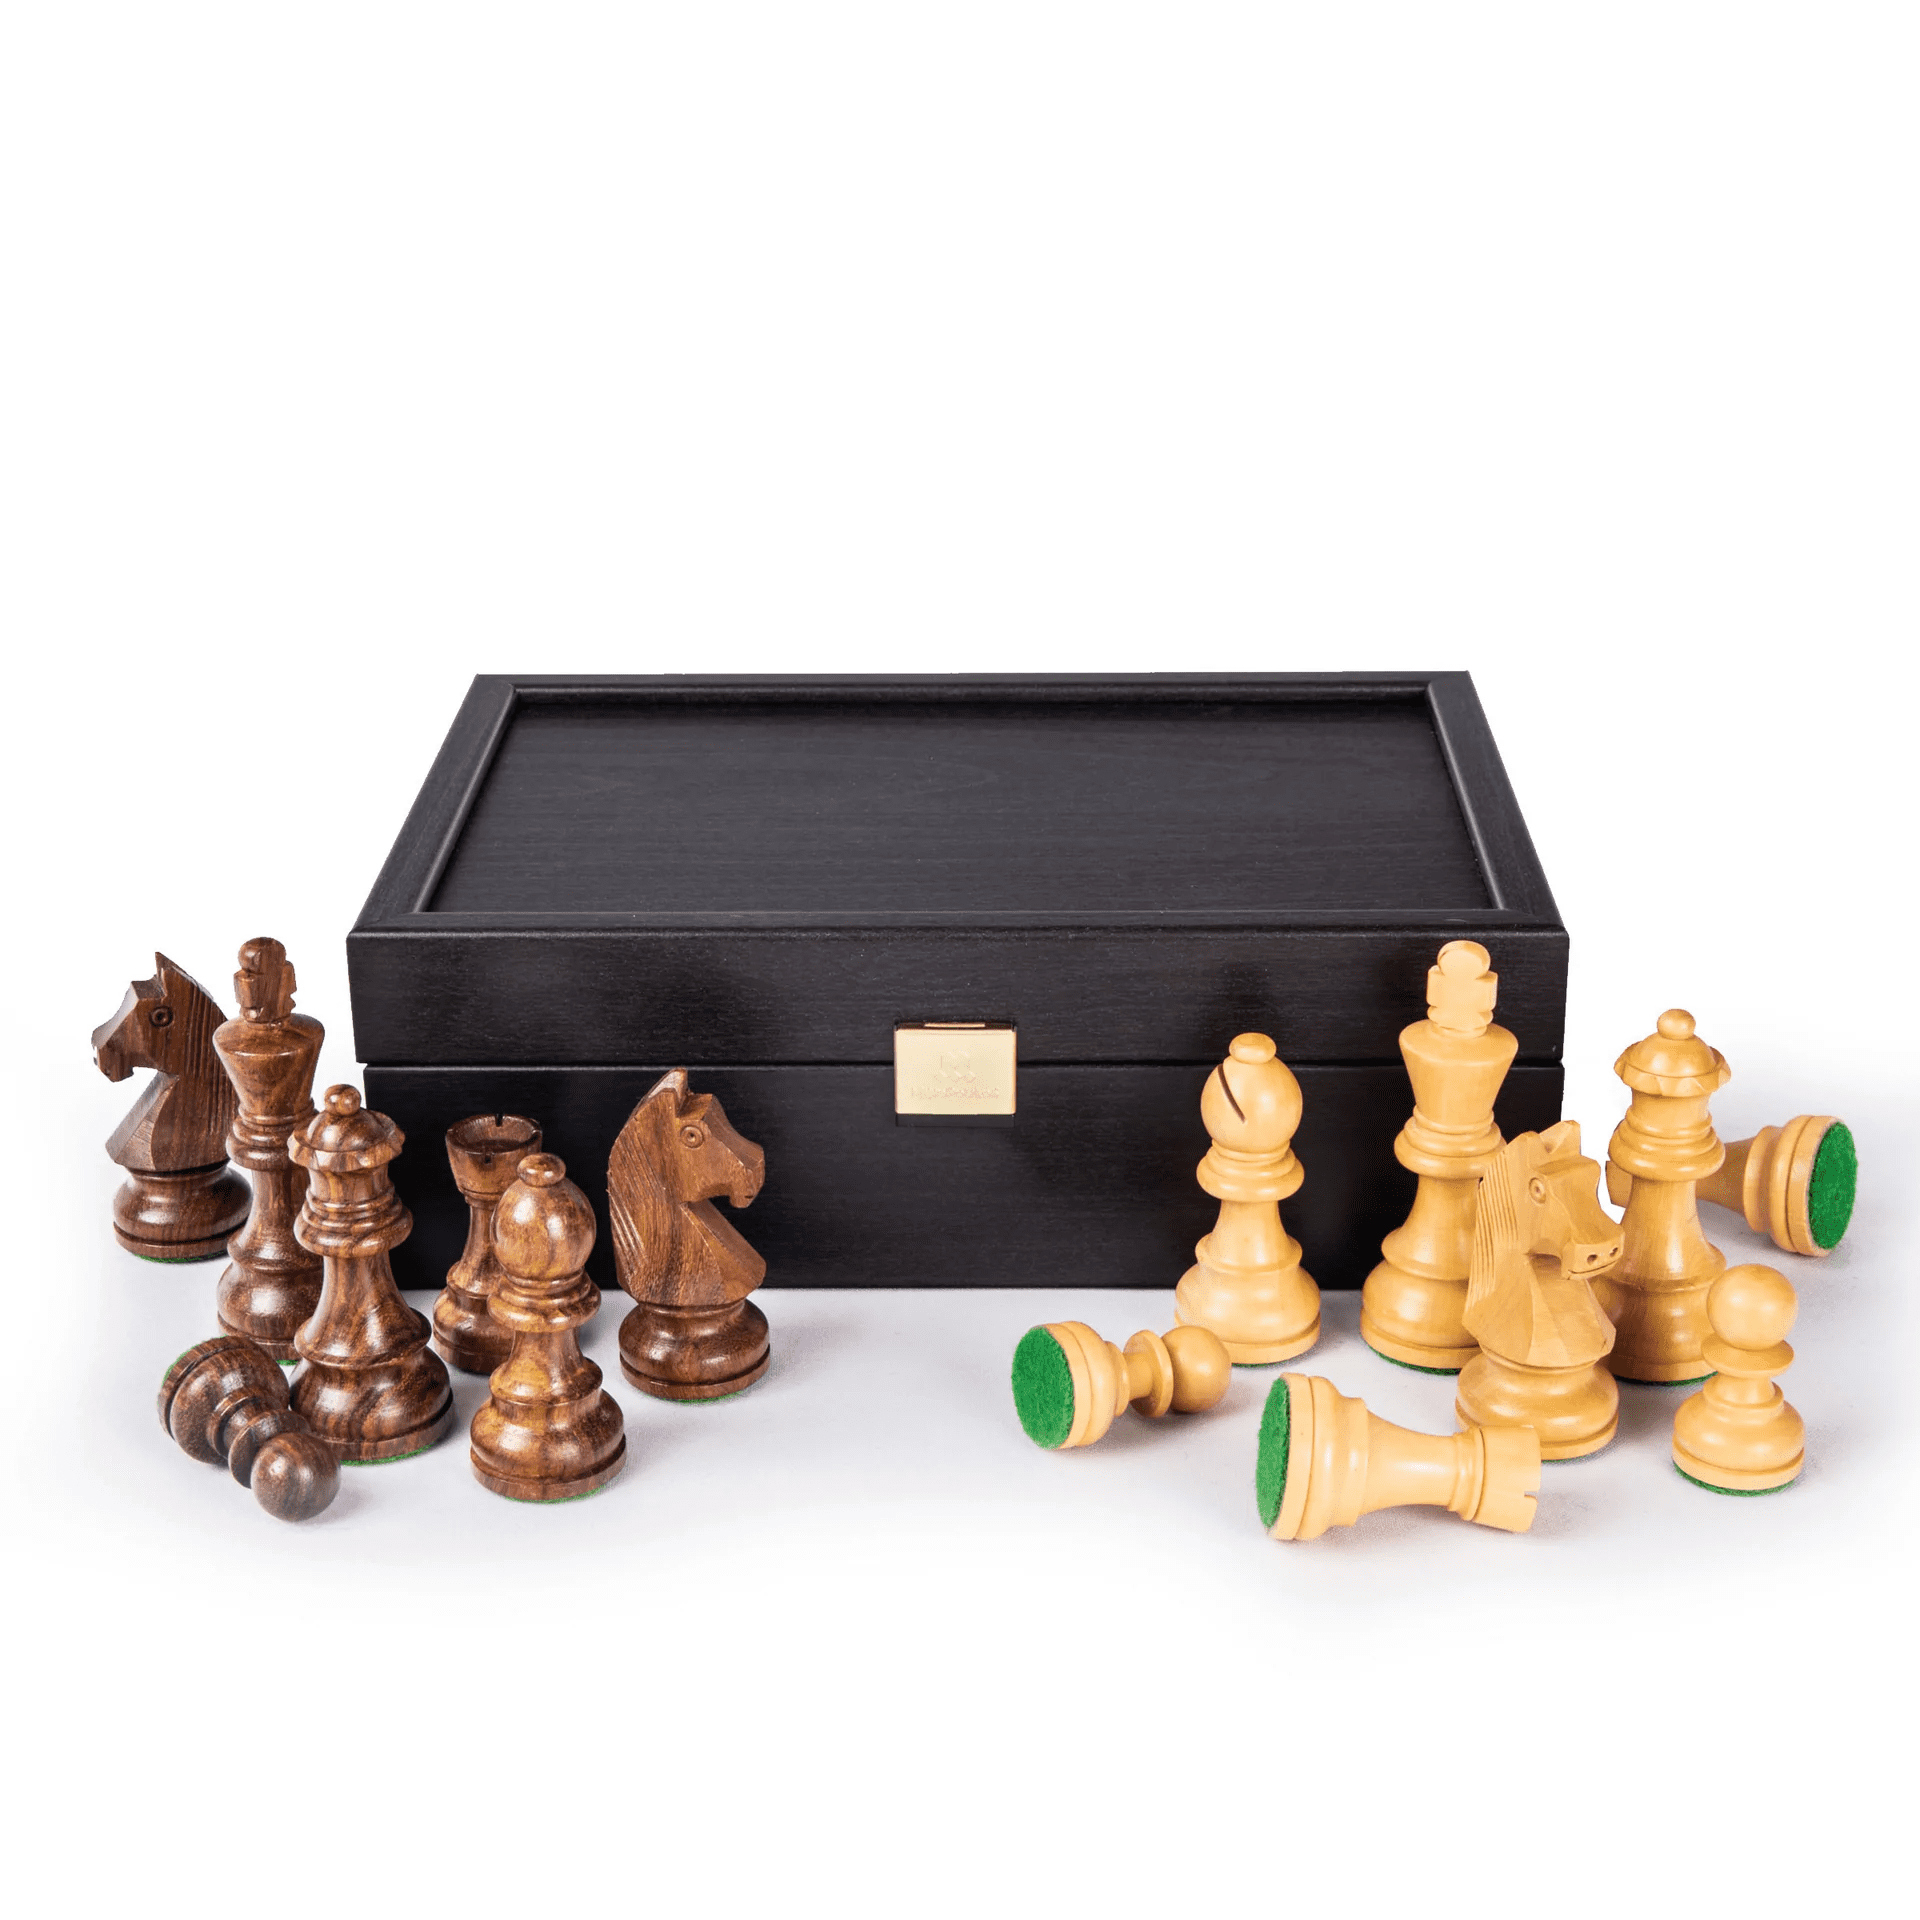 Staunton houten schaakstukken - Koningshoogte 9.5 cm